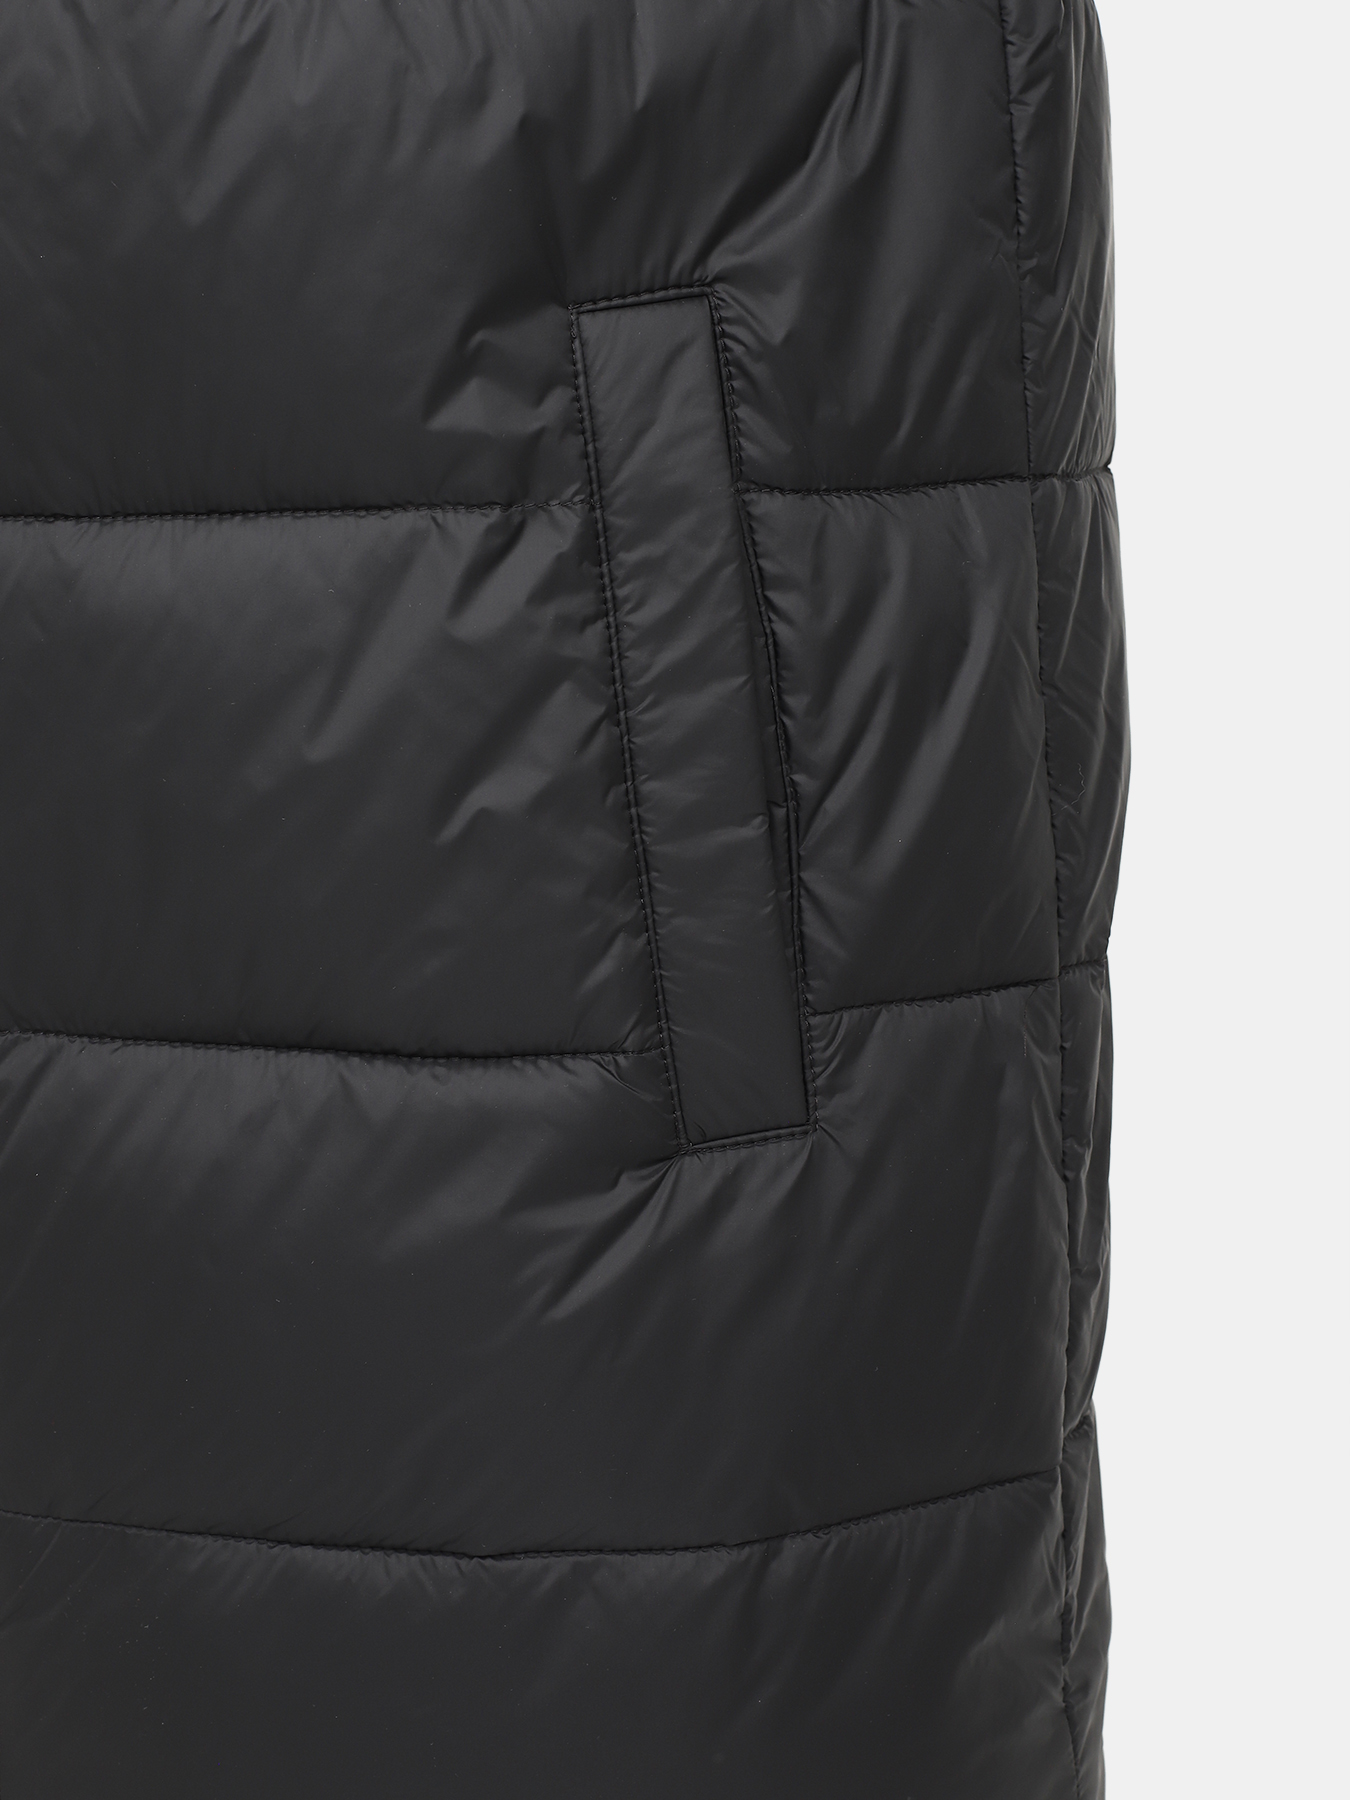 Удлиненная куртка Mati HUGO 426043-043, цвет черный, размер 48-50 - фото 2